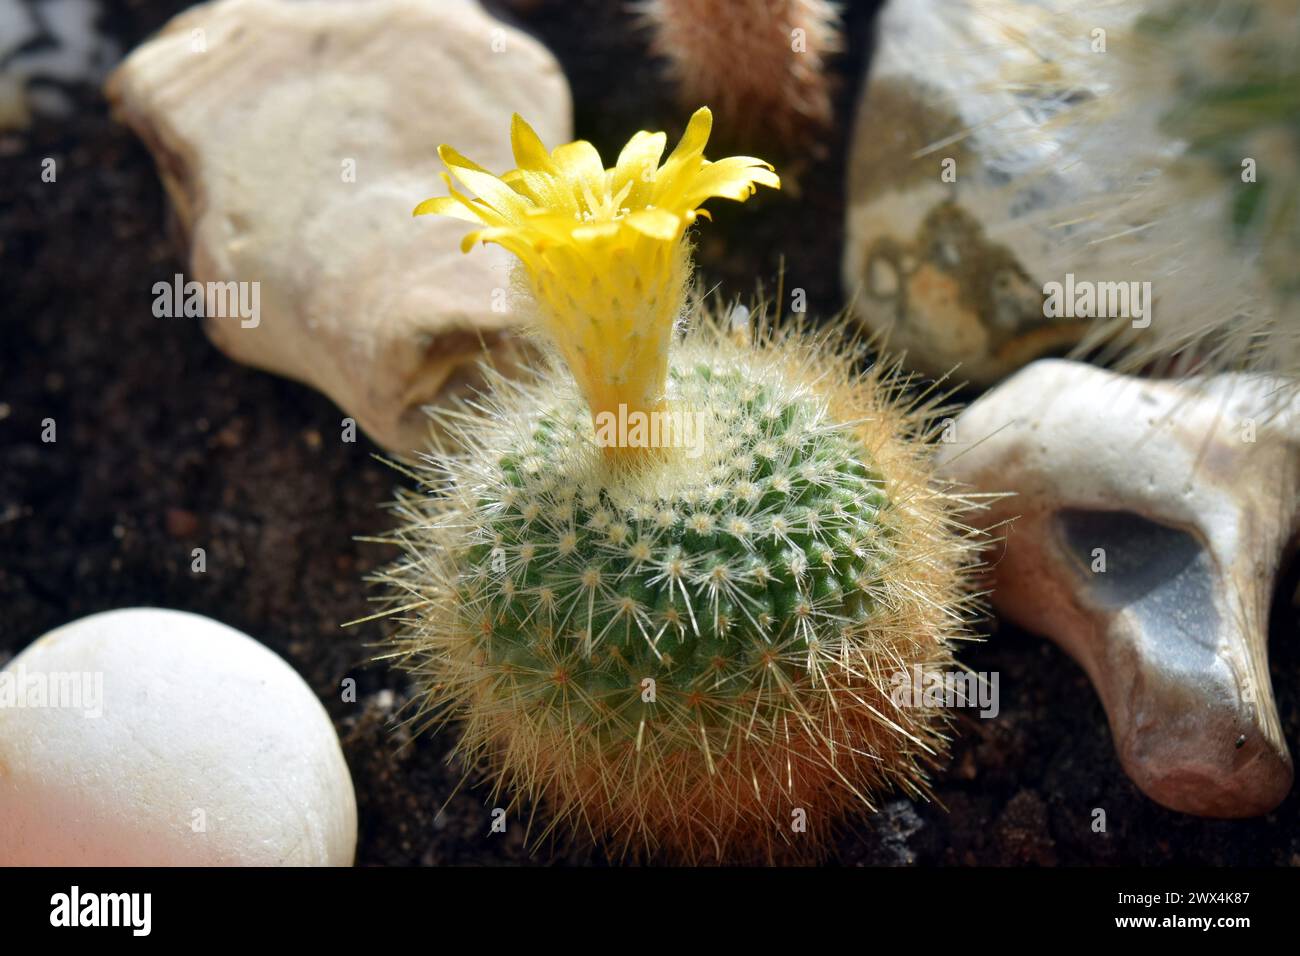 Flowering rebutia cactus in a pot Stock Photo